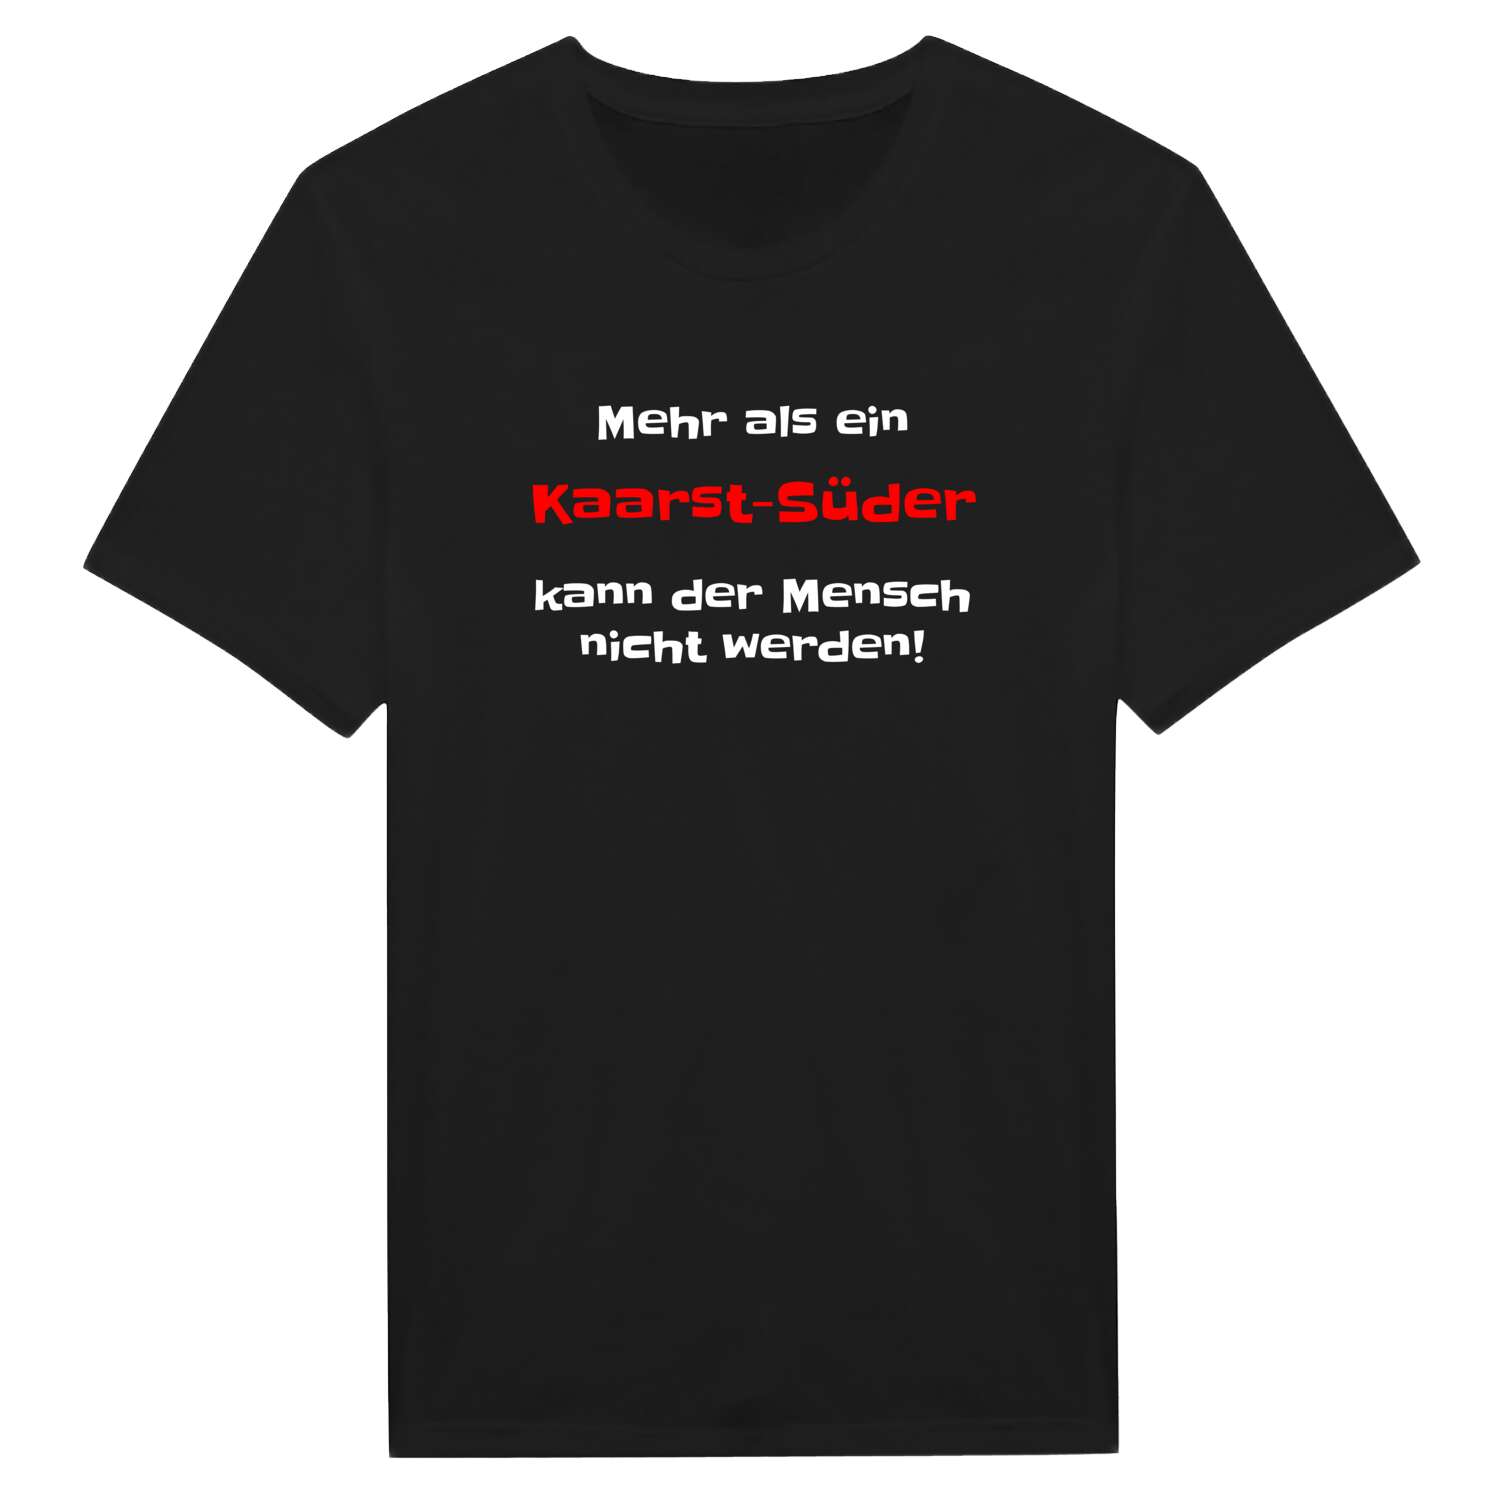 Kaarst-Süd T-Shirt »Mehr als ein«